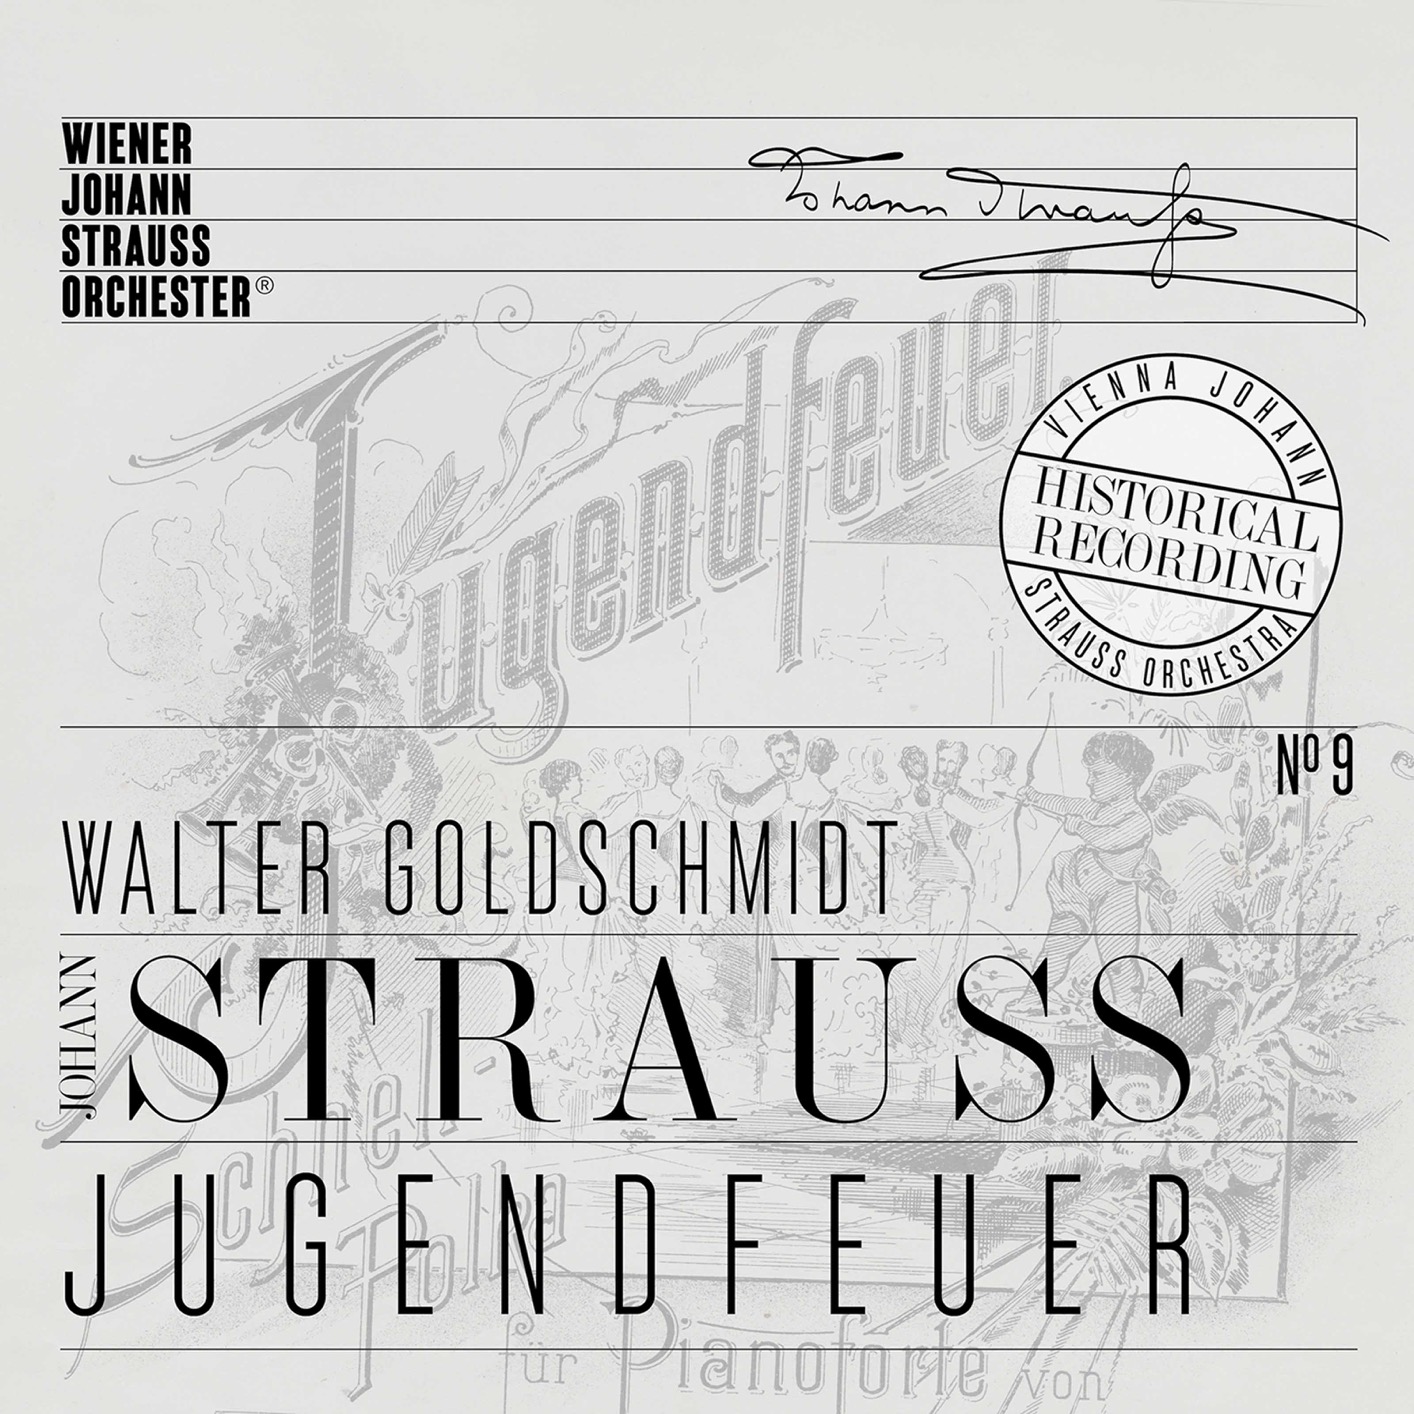 Wiener Johann Strauss Orchester & Walter Goldschmidt – Jugendfeuer (Historical Recording) (2021) [FLAC 24bit/48kHz]